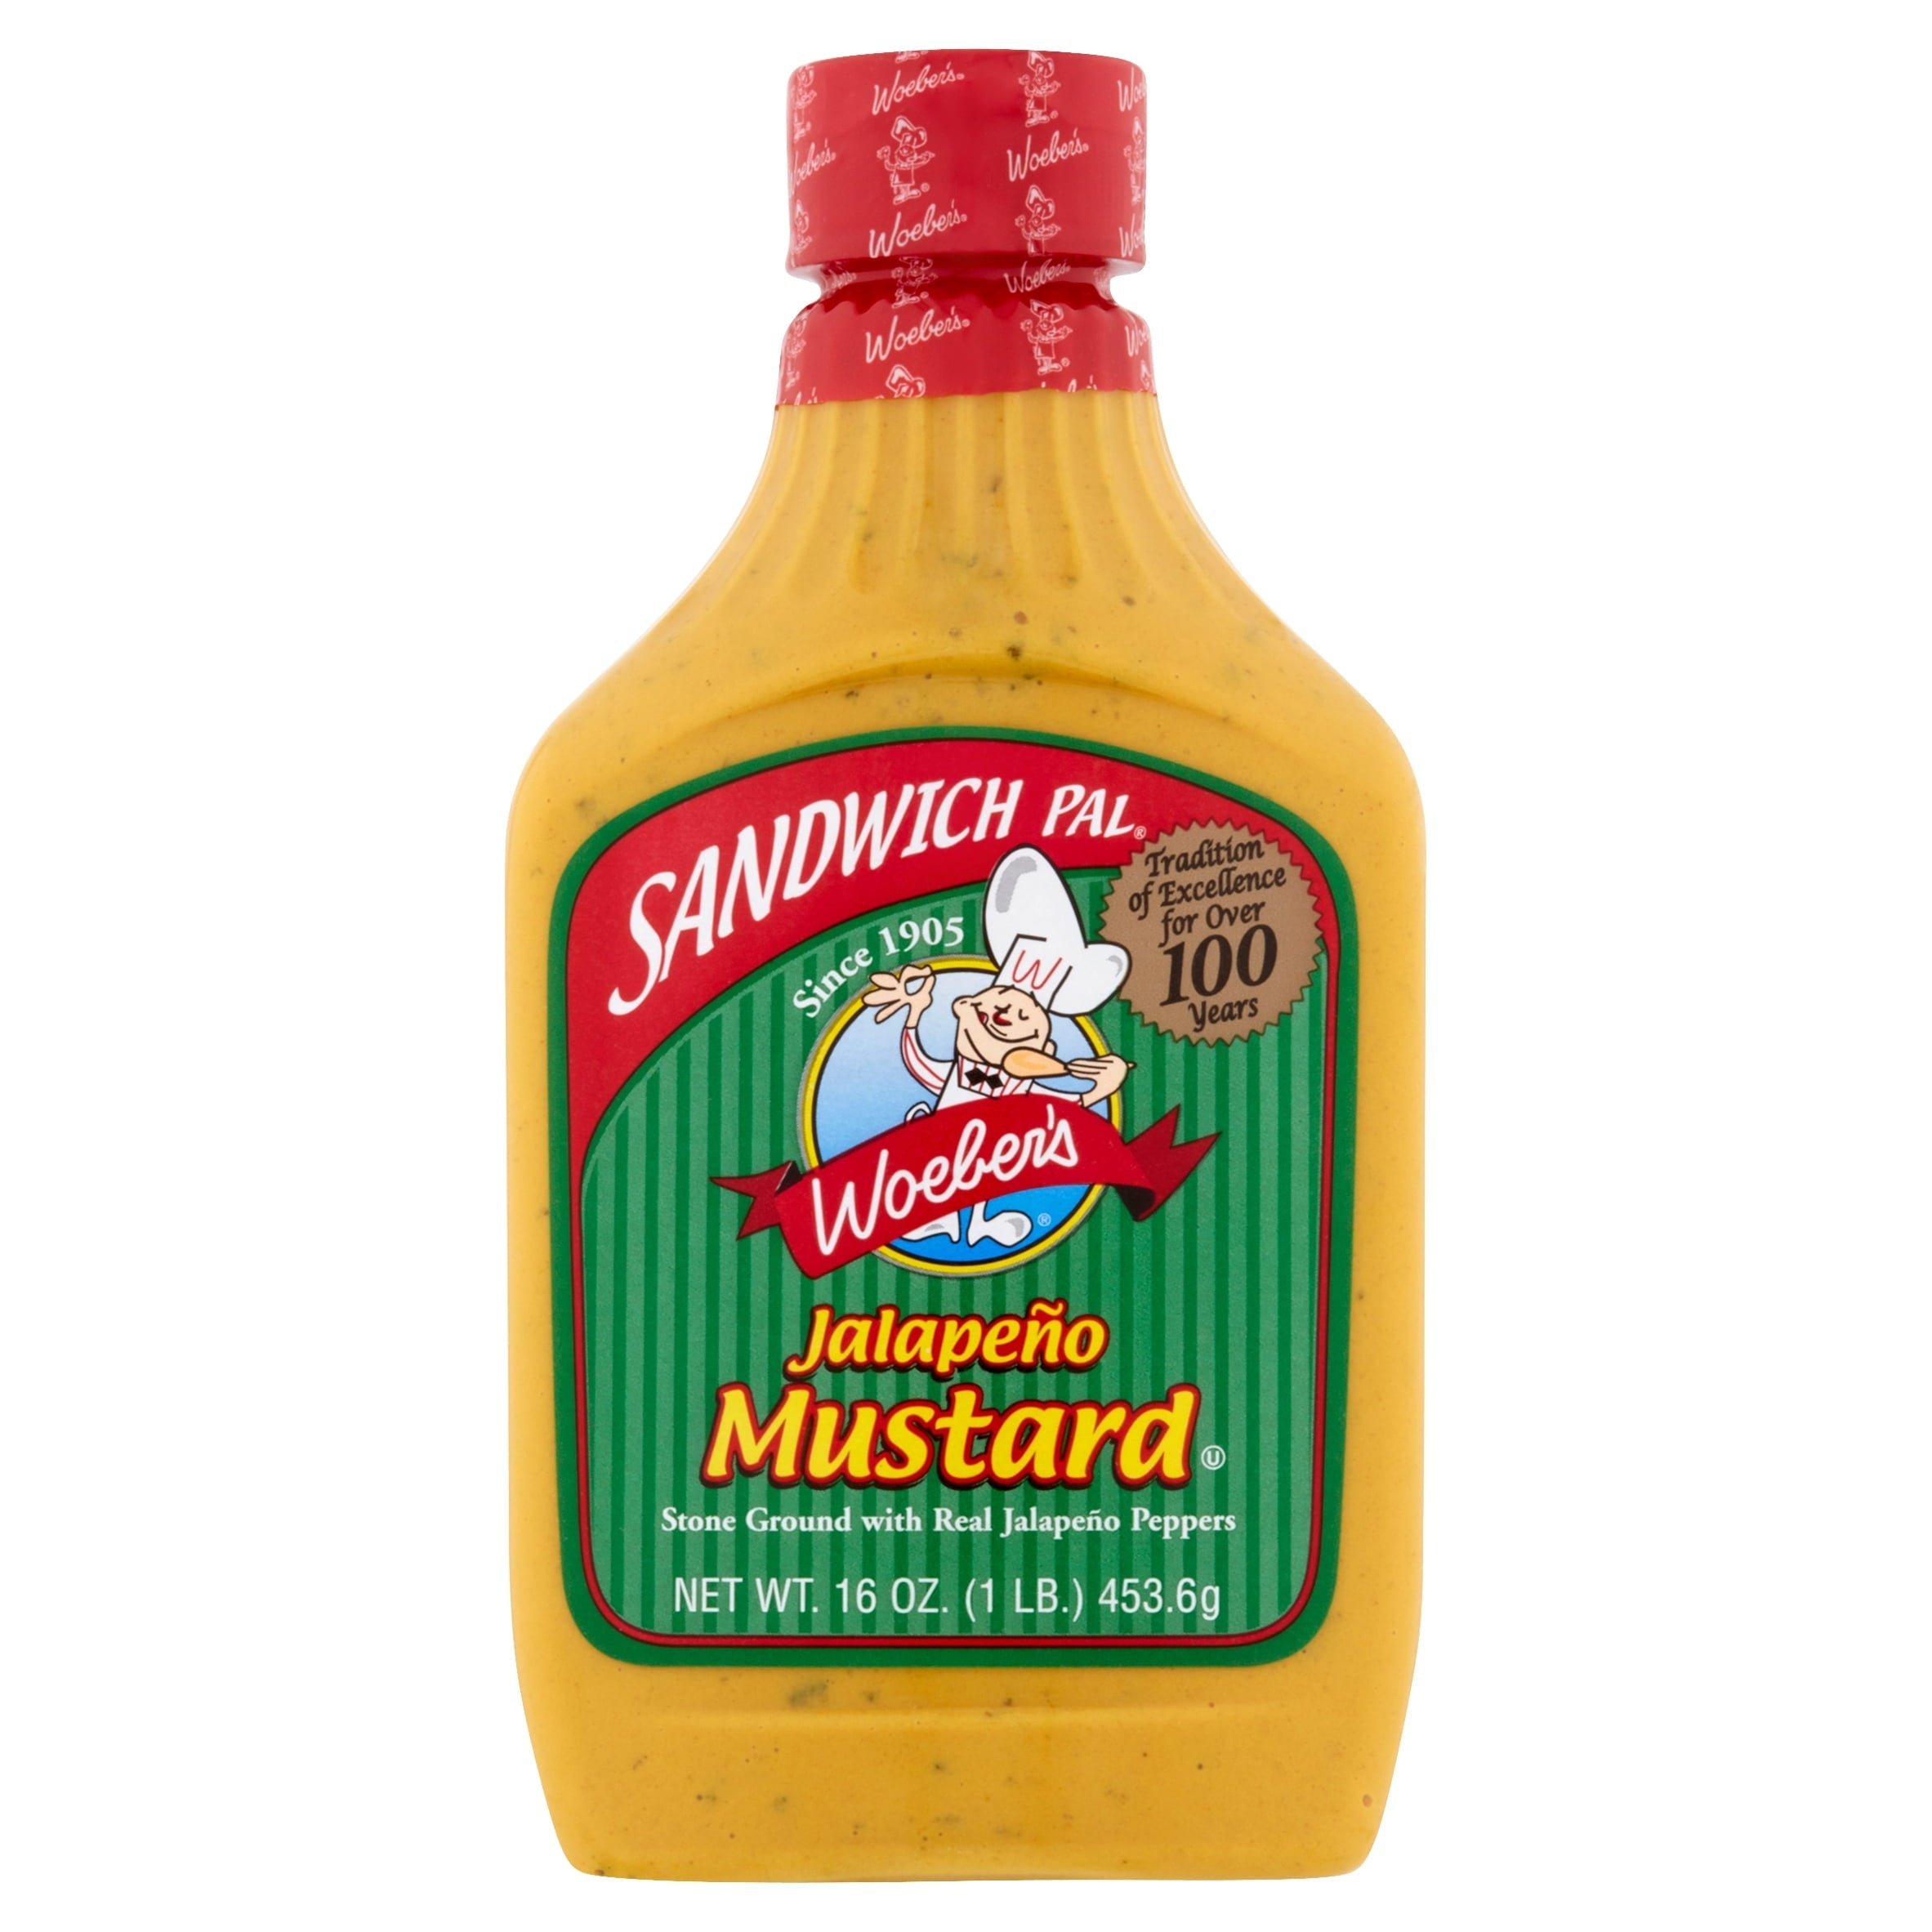 Woeber's Sandwich Pals Jalapeno Mustard 16 Oz